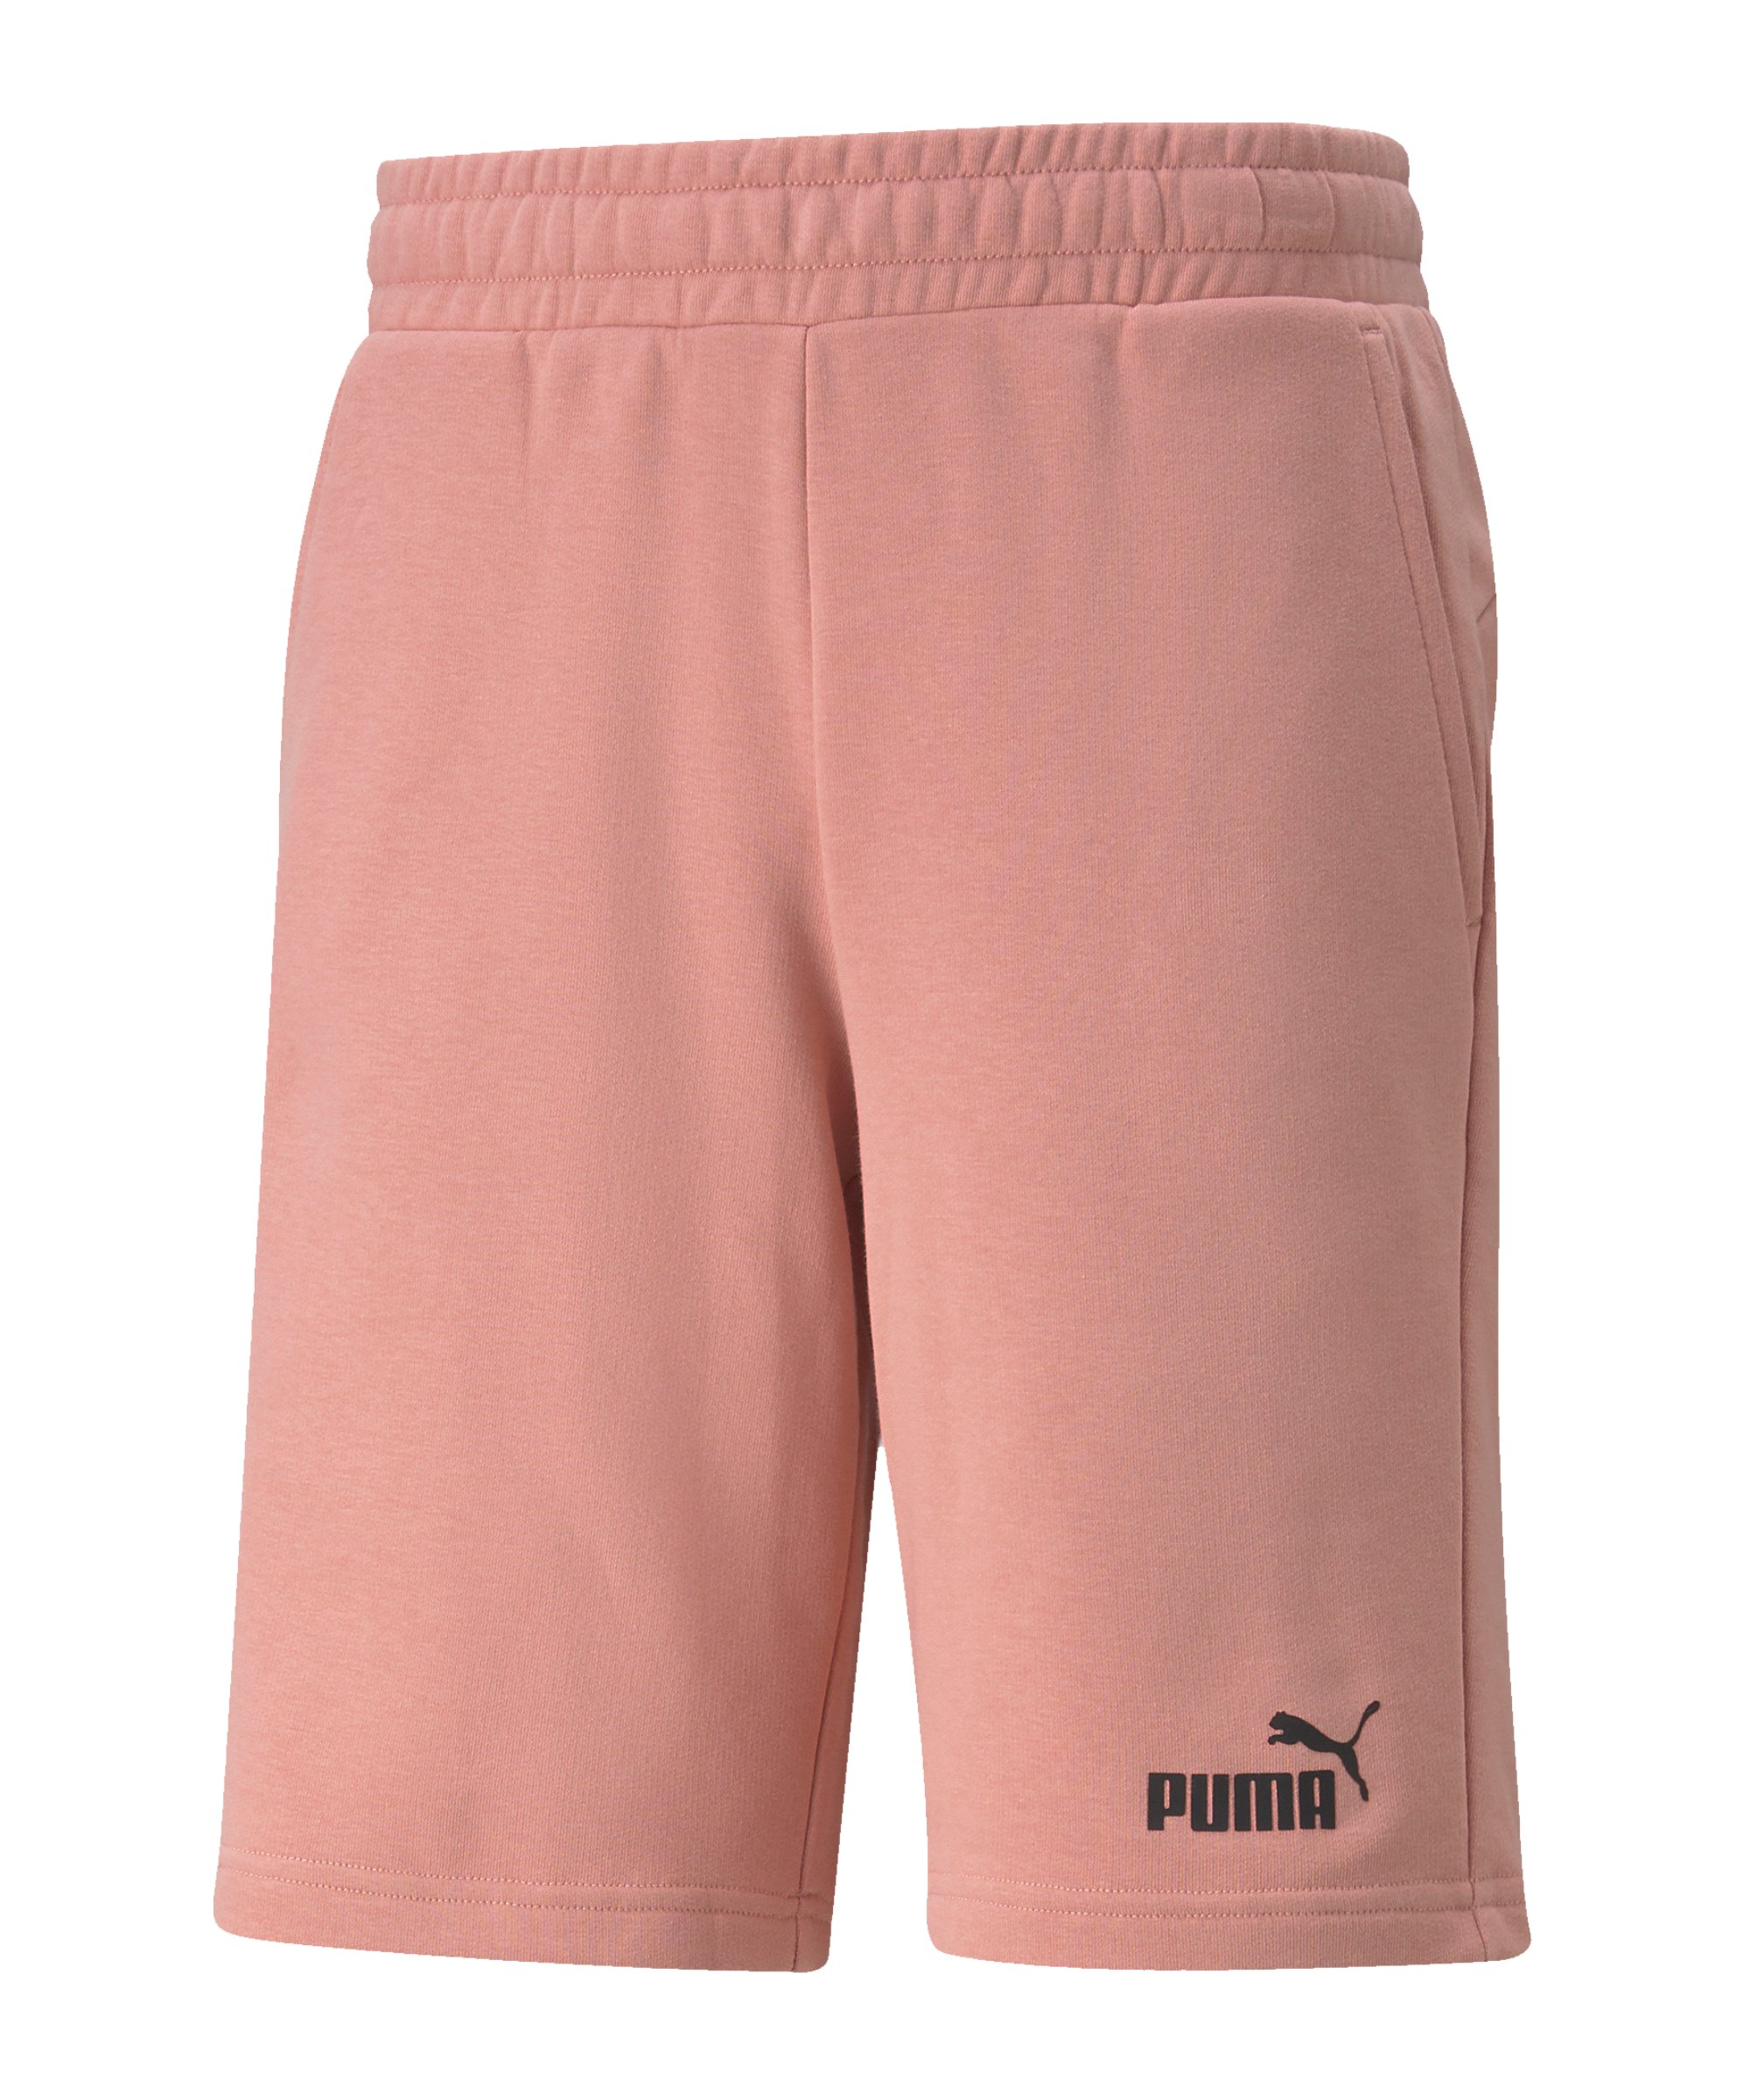 PUMA Essentials 10inch Short Rosa F24 - rosa